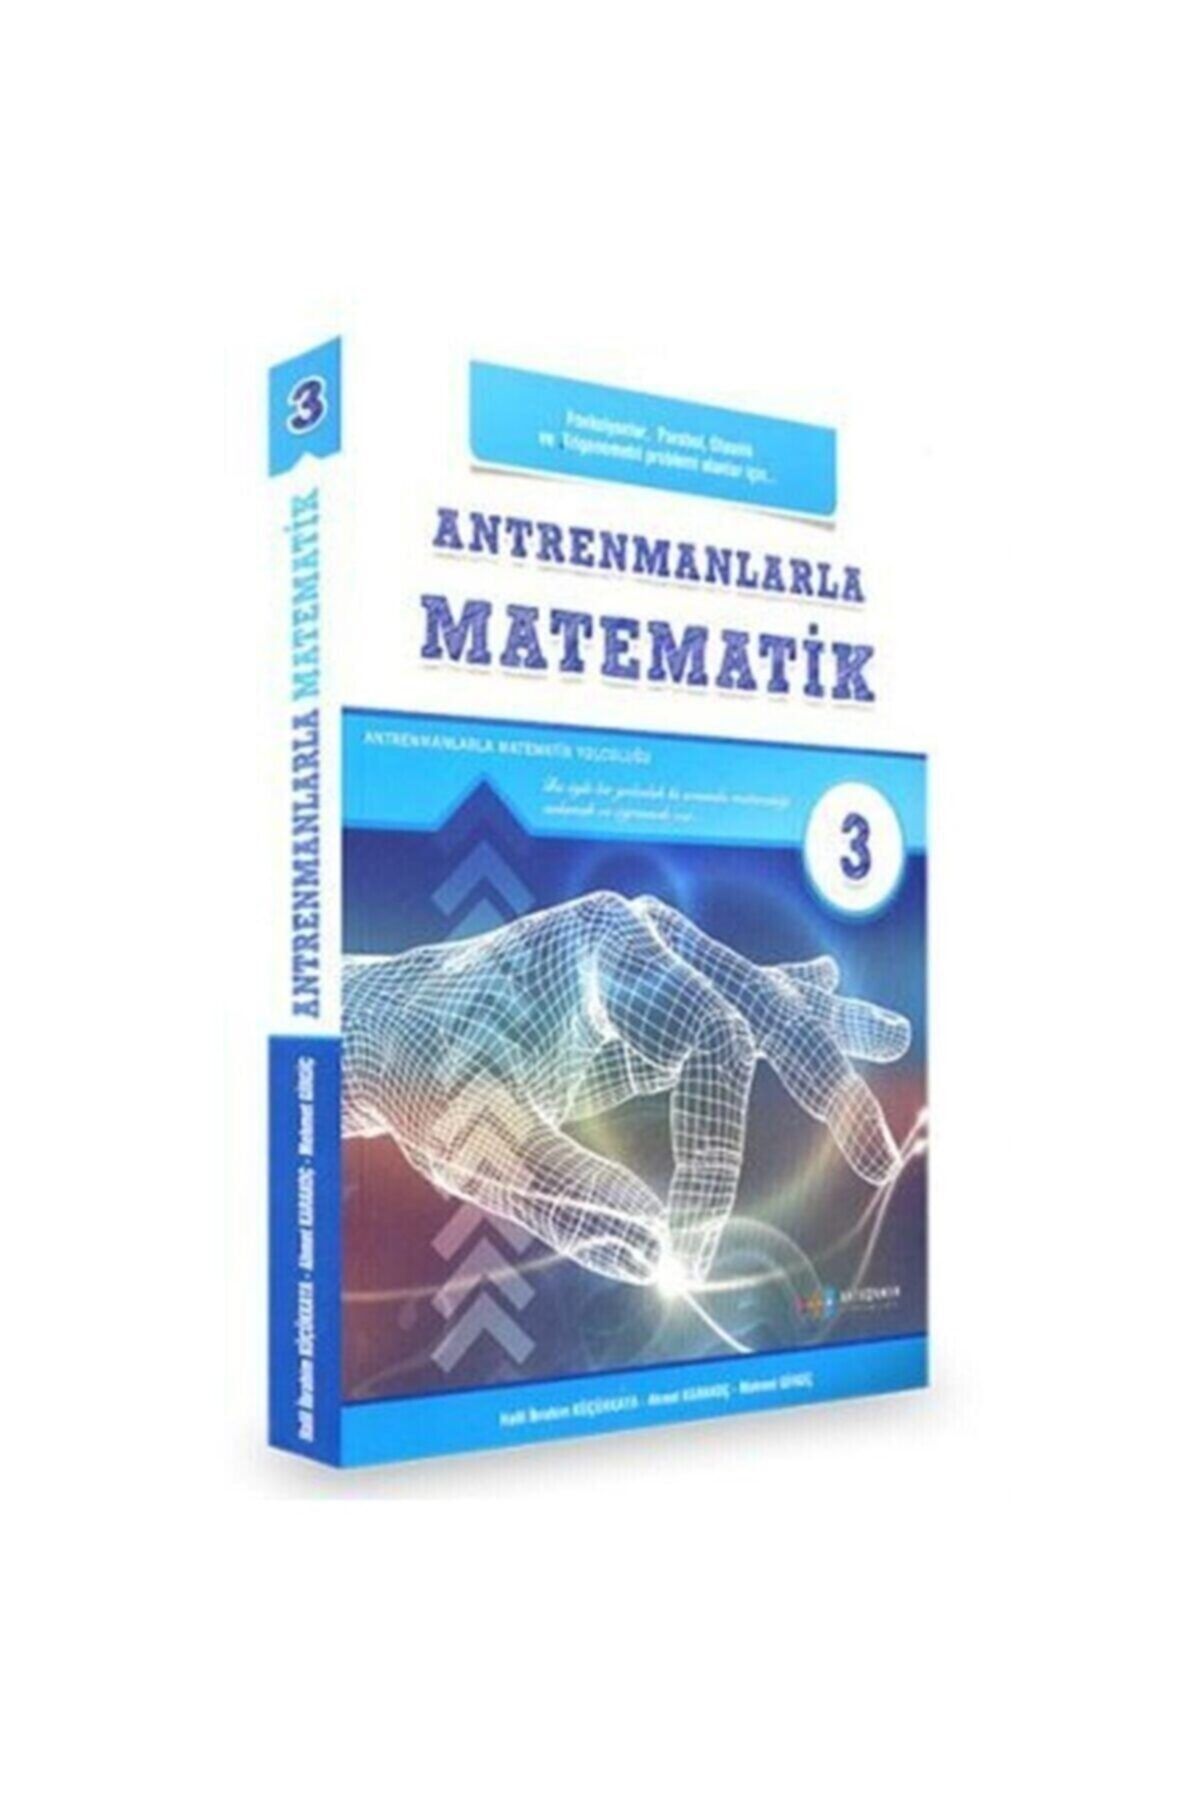 Antrenman Yayınları Antremanlarla Matematik 3.kitap